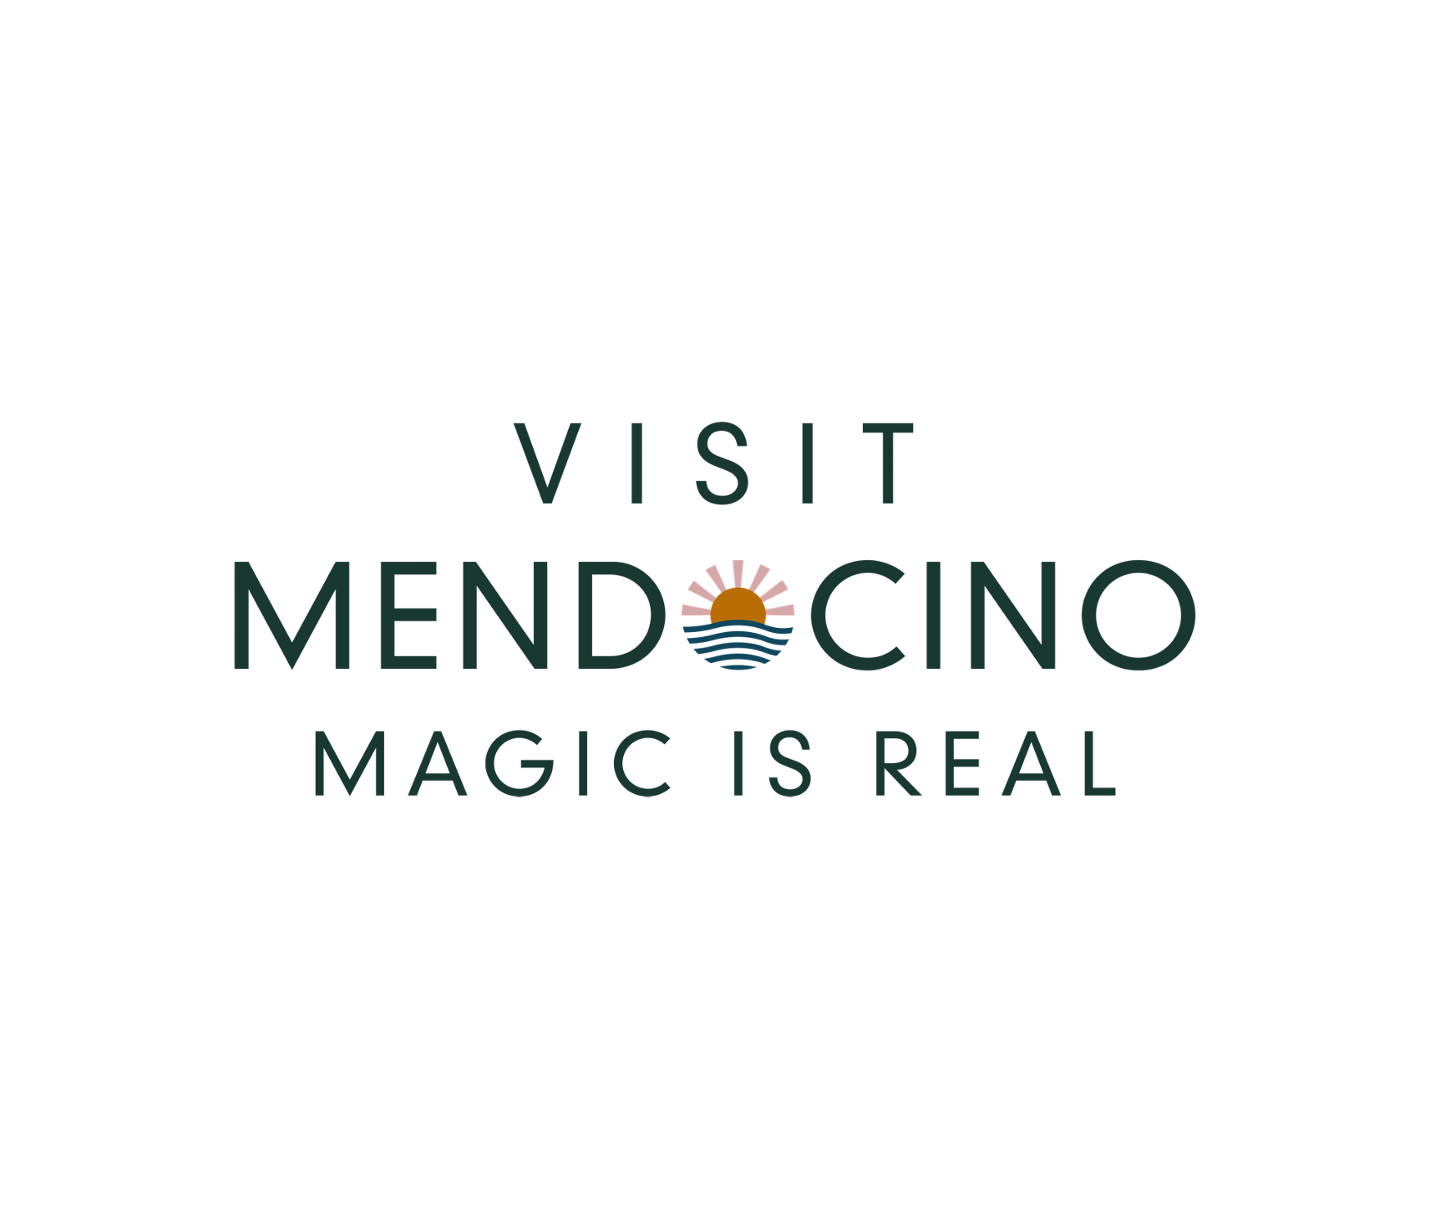 Visit Mendocino County